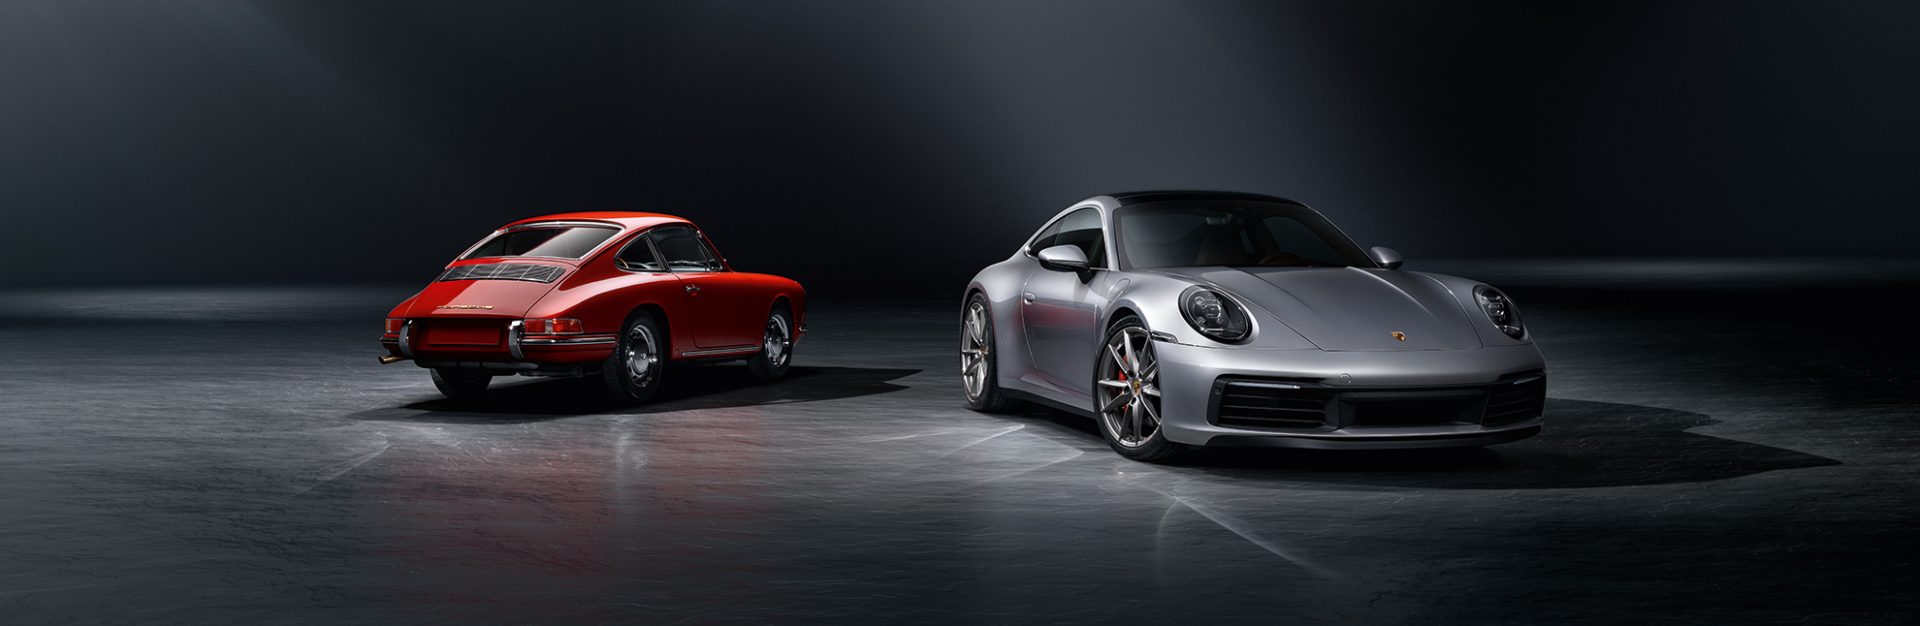 Samochody-używane-Porsche-Approved